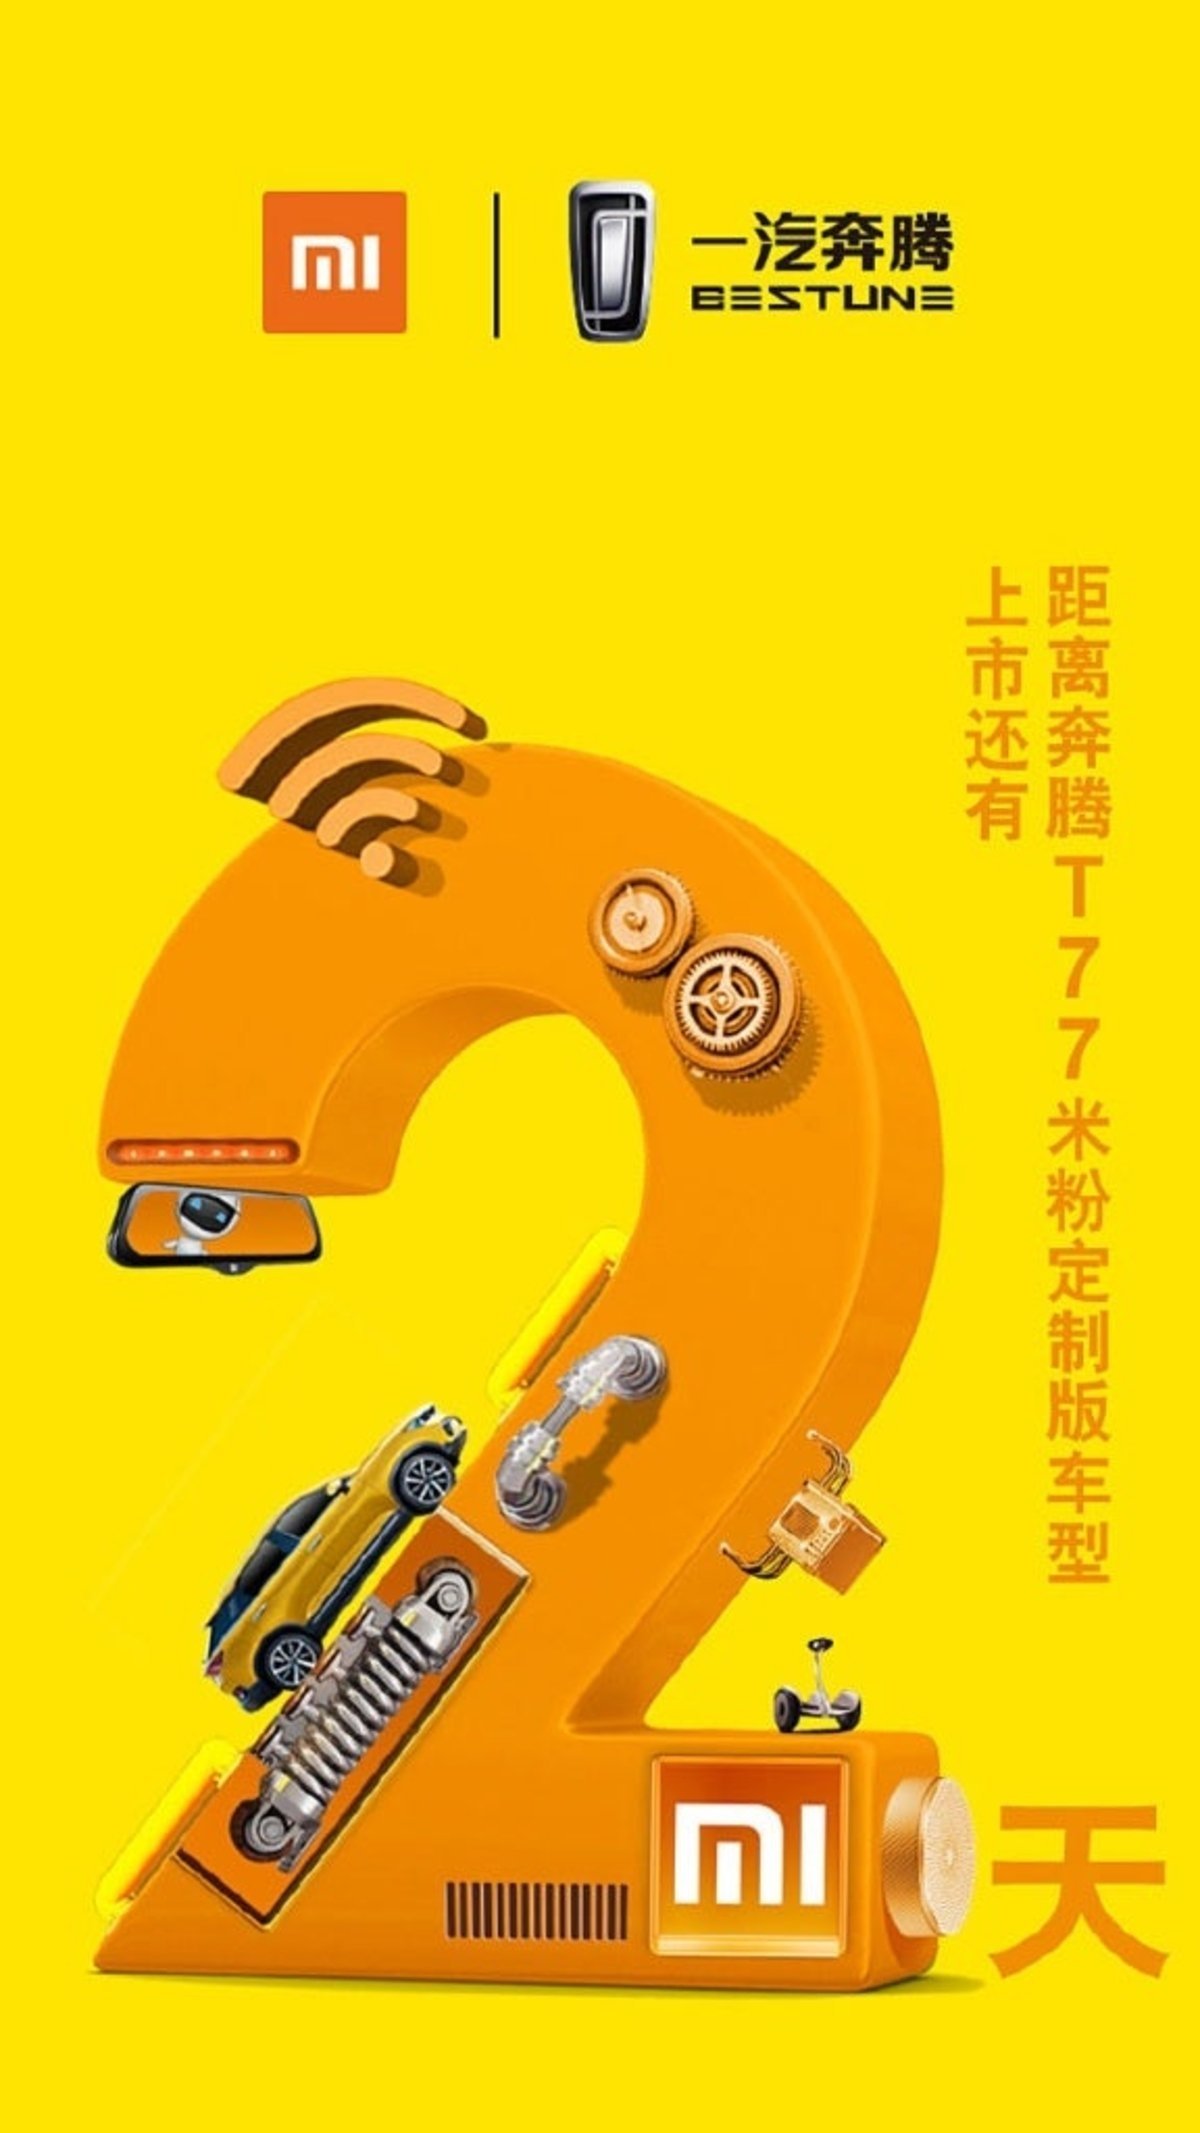 Xiaomi ya tiene su coche, una versión personalizada del Bestune T77